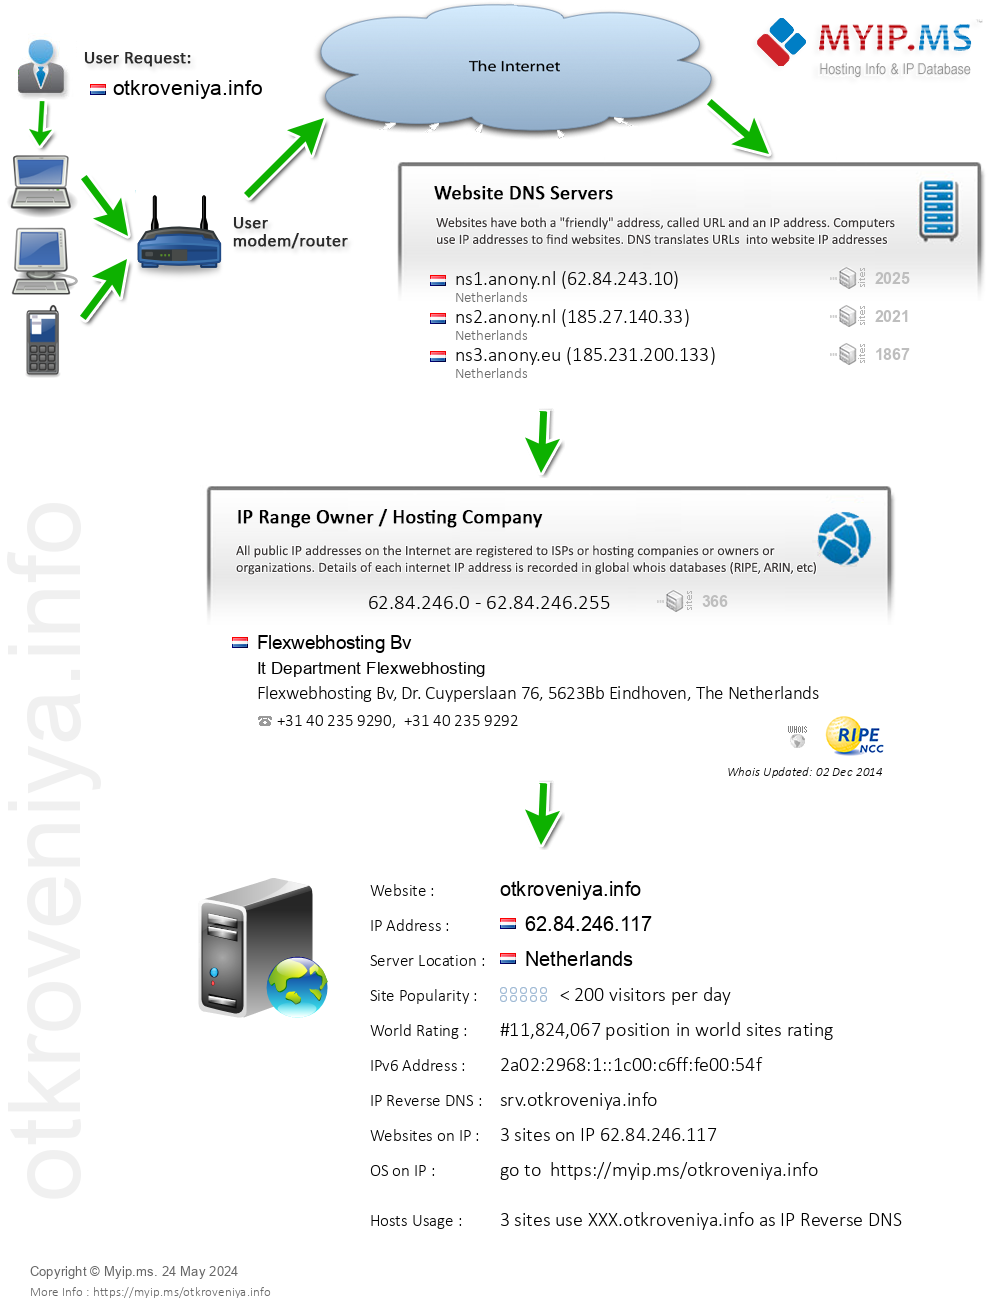 Otkroveniya.info - Website Hosting Visual IP Diagram